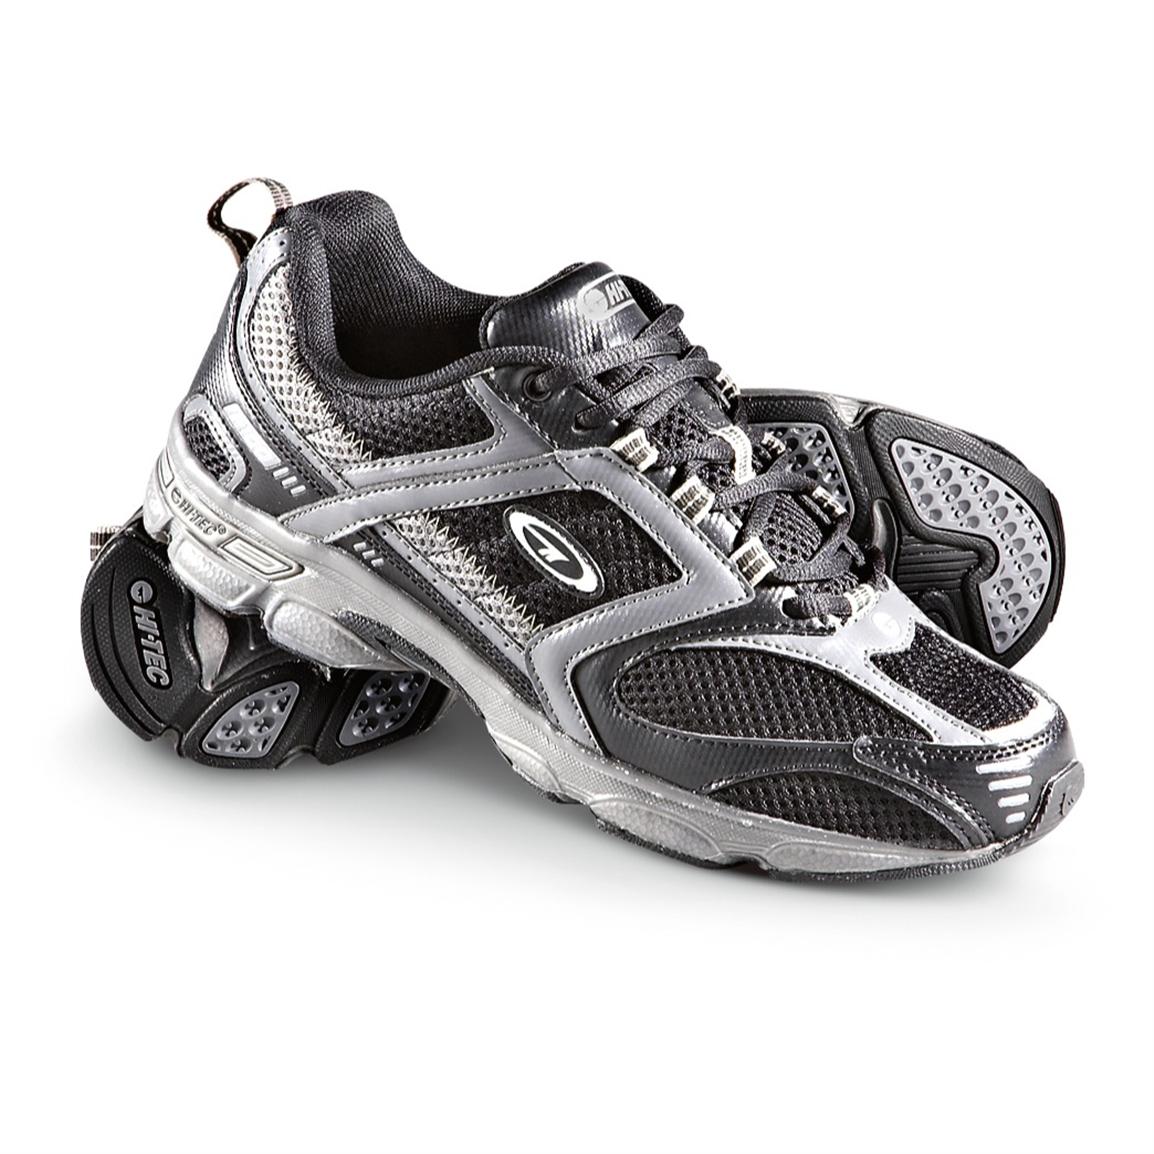 Hoelahoep pariteit Formulering Men's Hi - Tec® R100 Trail Runners, Black / Gray - 198006, Running Shoes &  Sneakers at Sportsman's Guide